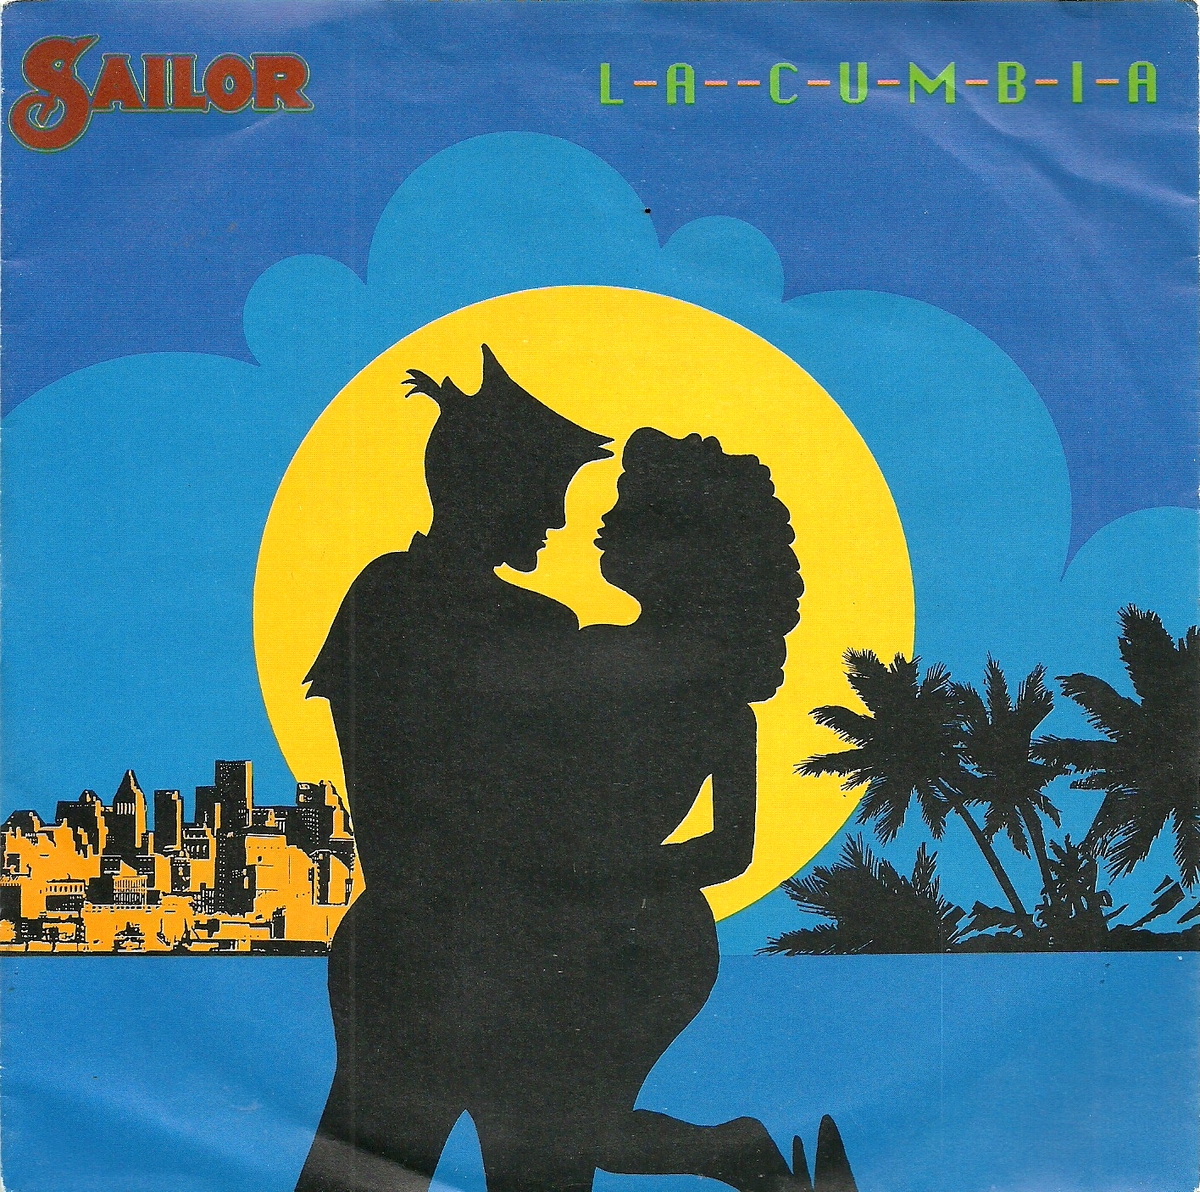 Sailor — La cumbia cover artwork